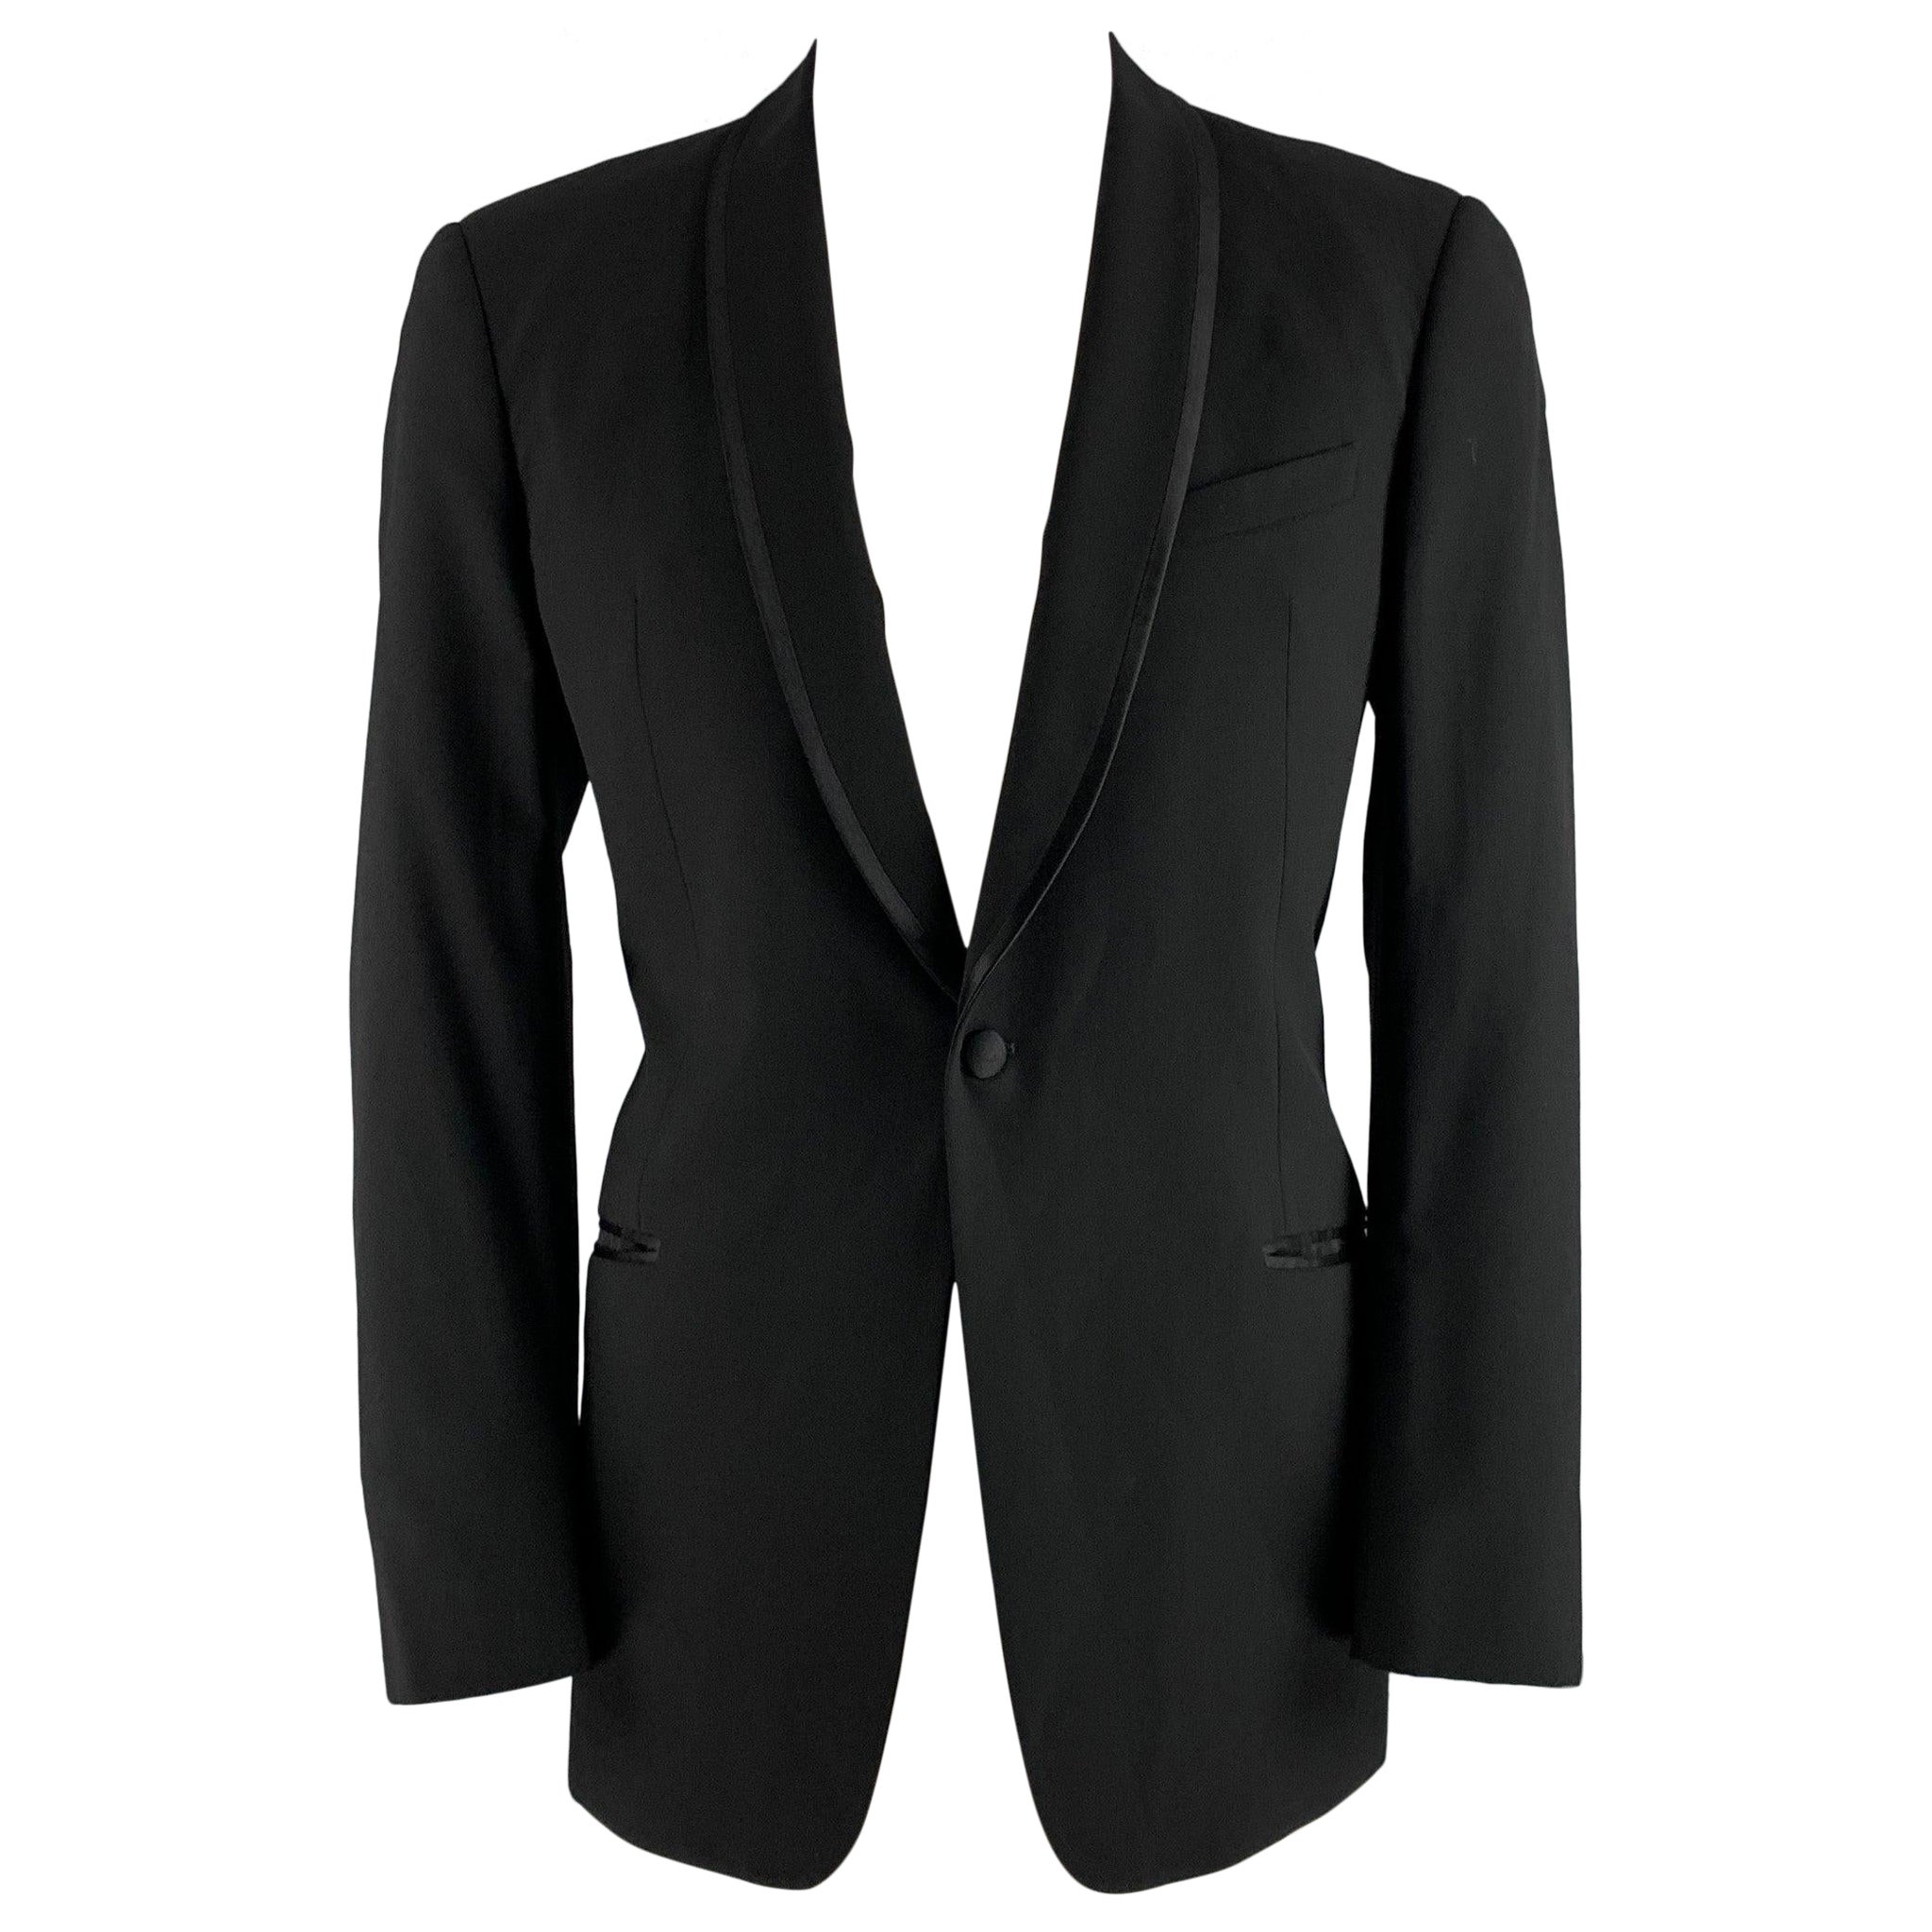 ARMANI COLLEZIONI Size 42 Black Solid Wool Shawl Collar Sport Coat For Sale